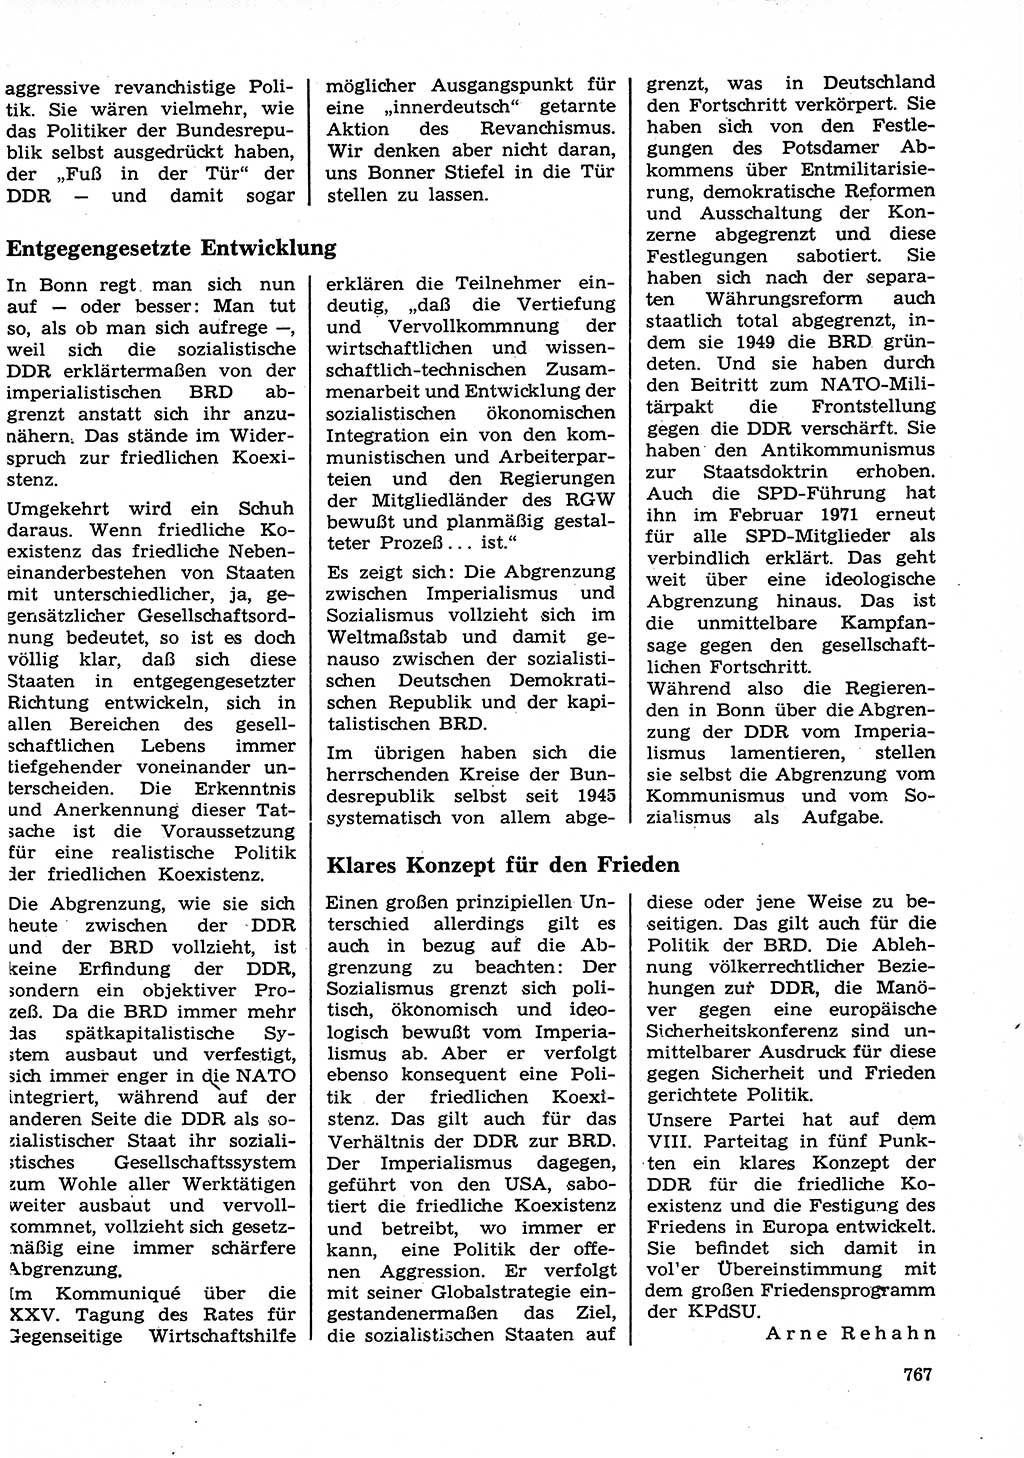 Neuer Weg (NW), Organ des Zentralkomitees (ZK) der SED (Sozialistische Einheitspartei Deutschlands) für Fragen des Parteilebens, 26. Jahrgang [Deutsche Demokratische Republik (DDR)] 1971, Seite 767 (NW ZK SED DDR 1971, S. 767)